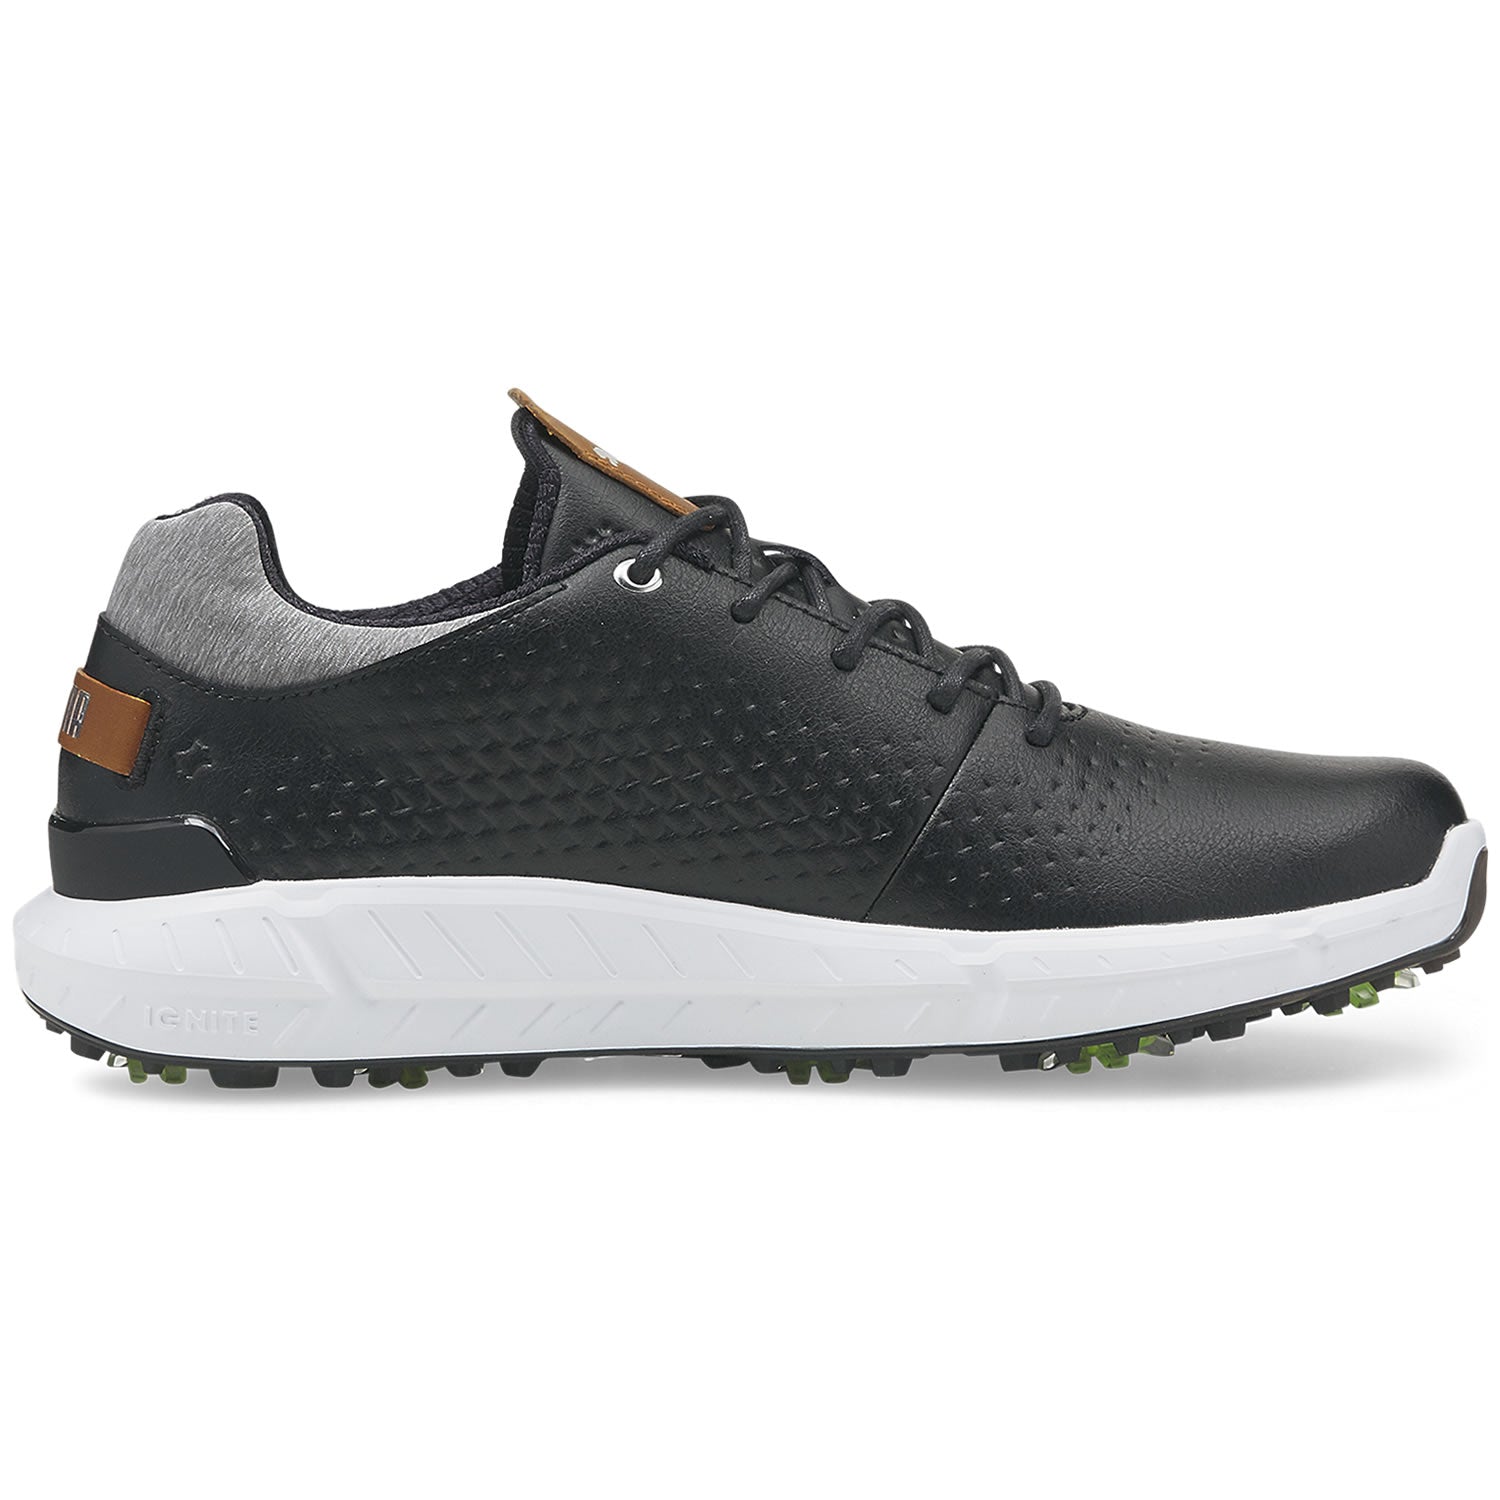 Puma Ignite Articulate Leather Golf Shoes 376155